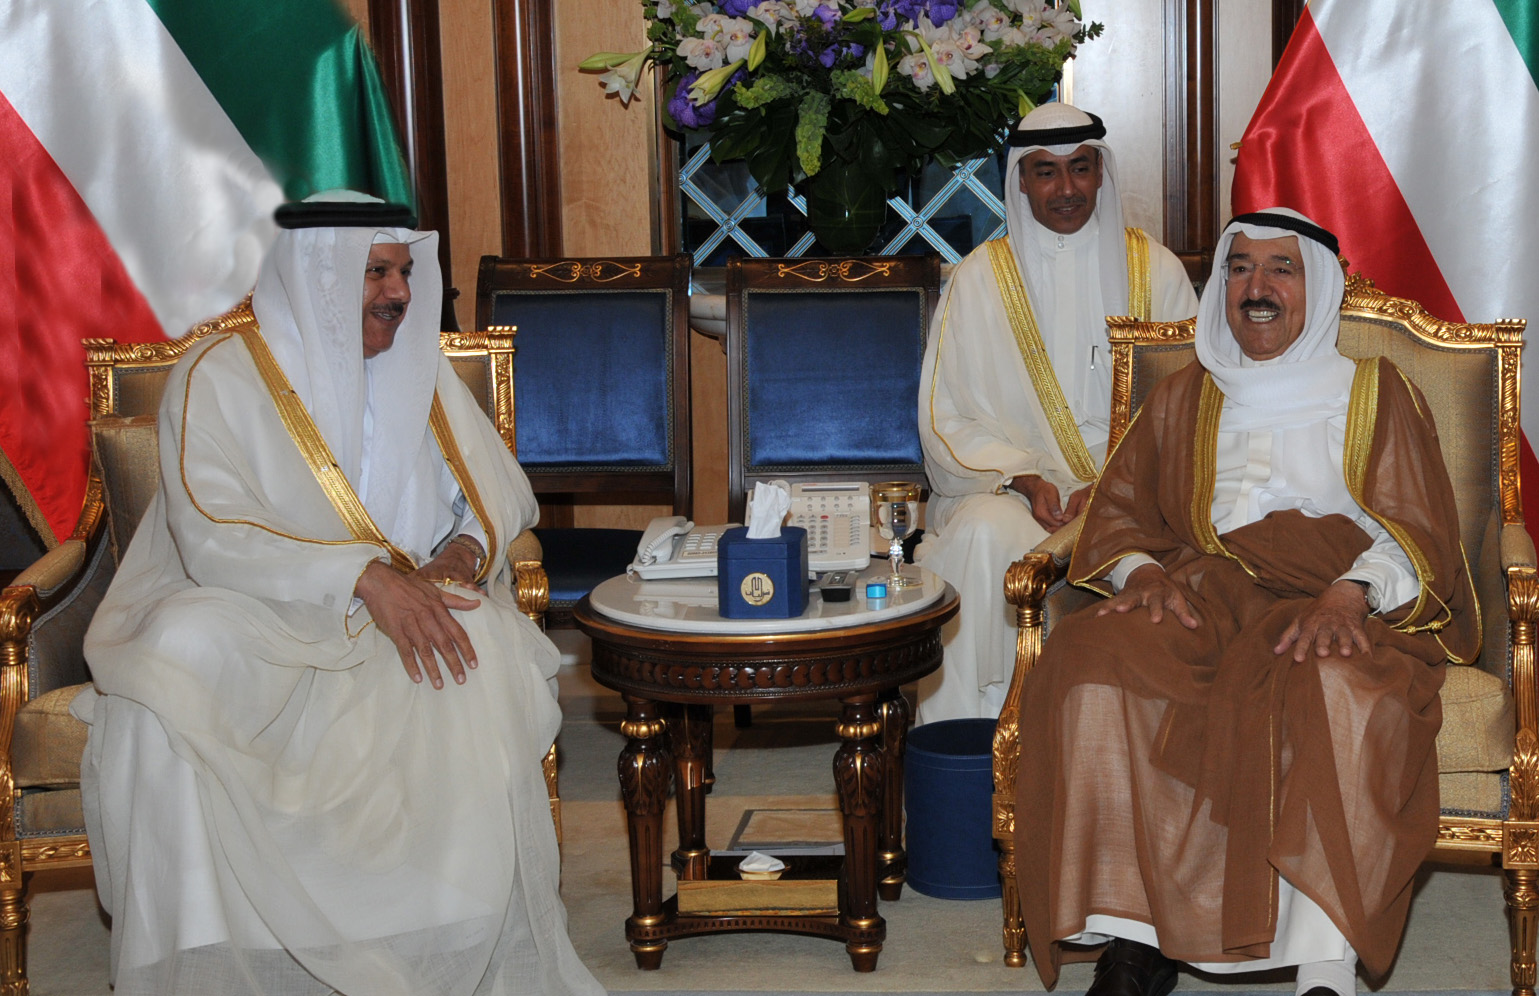 His Highness the Amir Sheikh Sabah Al-Ahmad Al-Jaber Al-Sabah receives GCC Secretary General Dr. Abdul Latif bin Rashid Al-Zayani